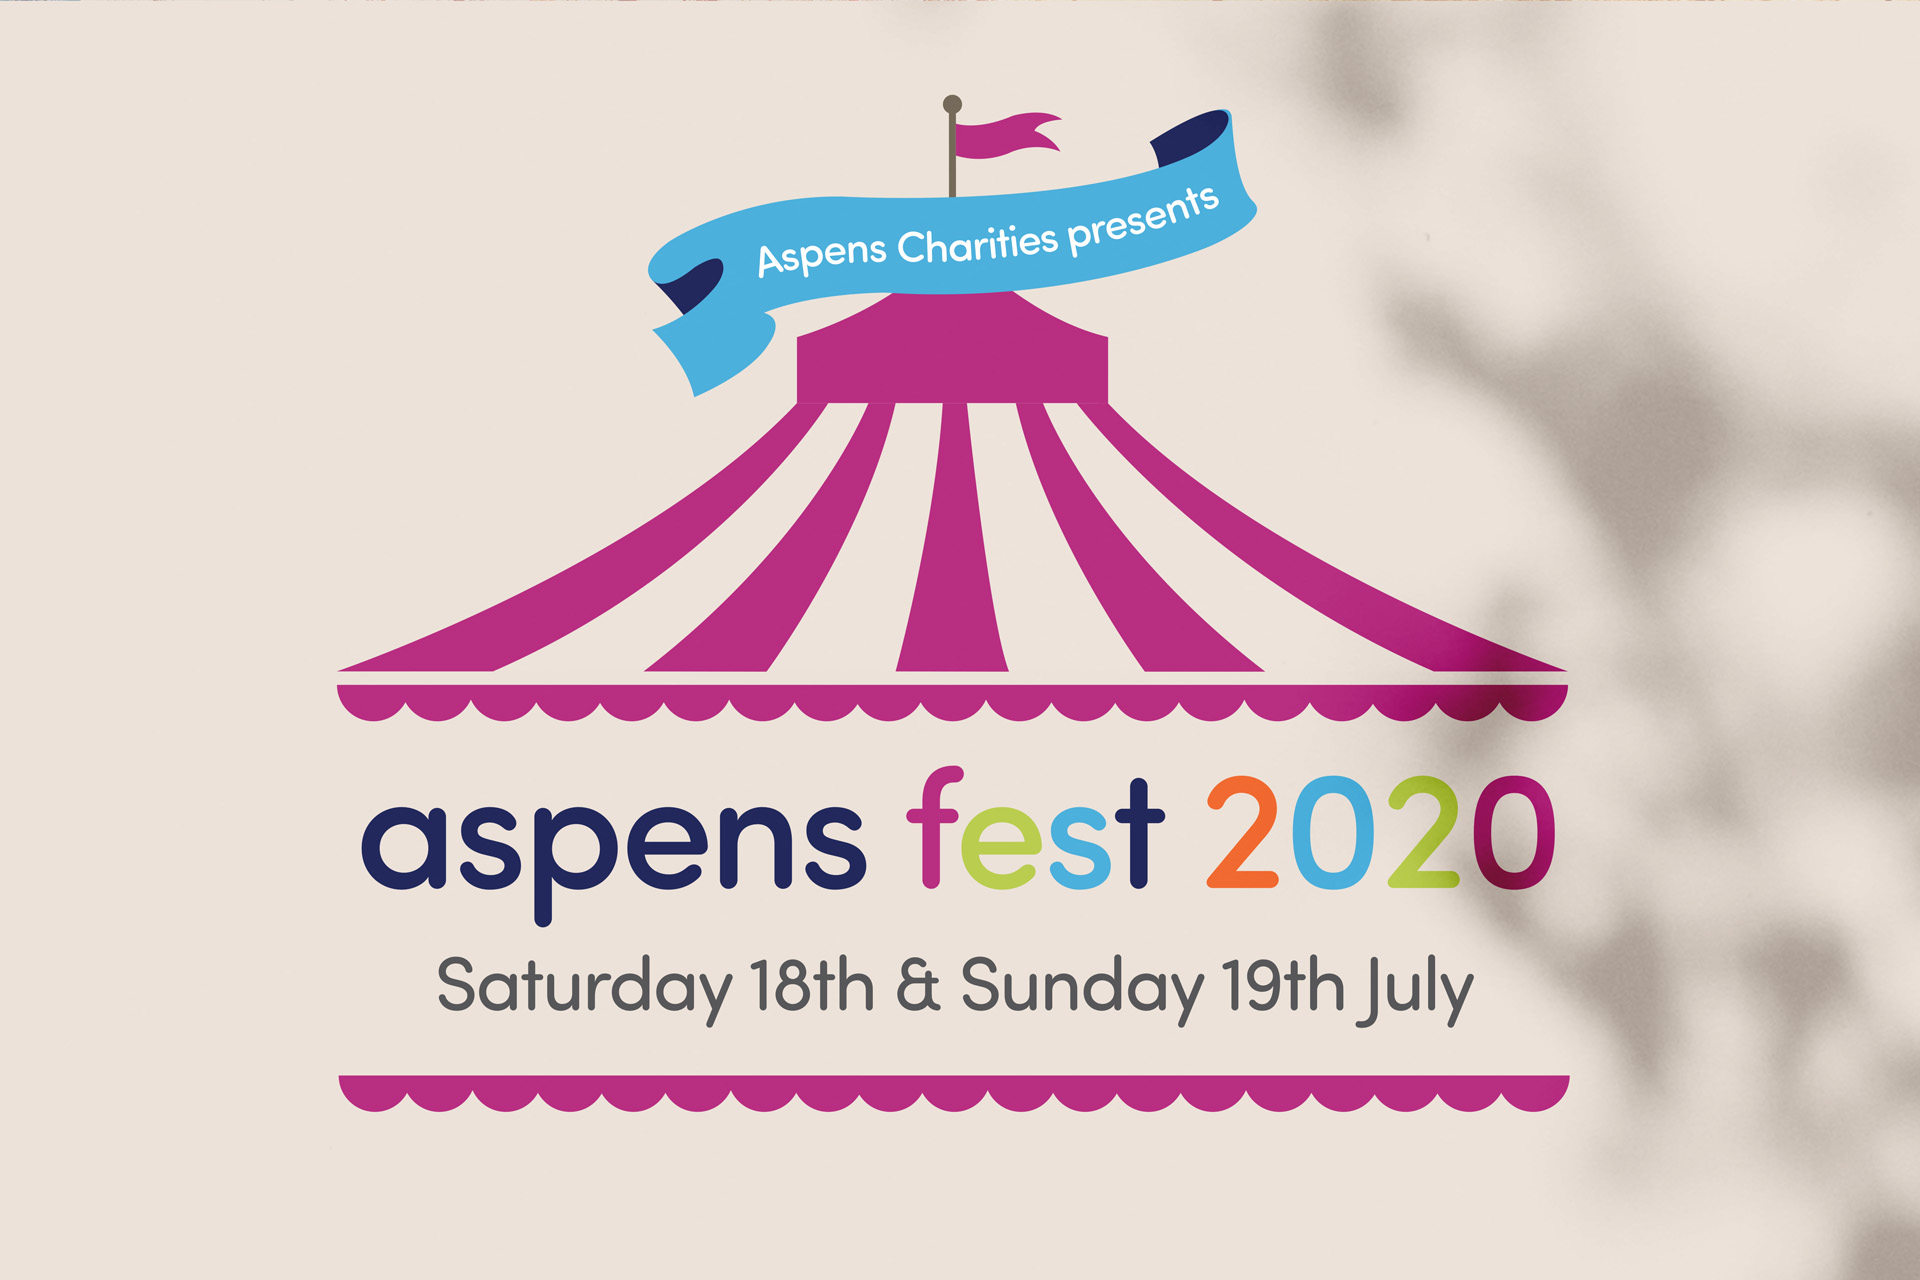 Aspens fest event logo design